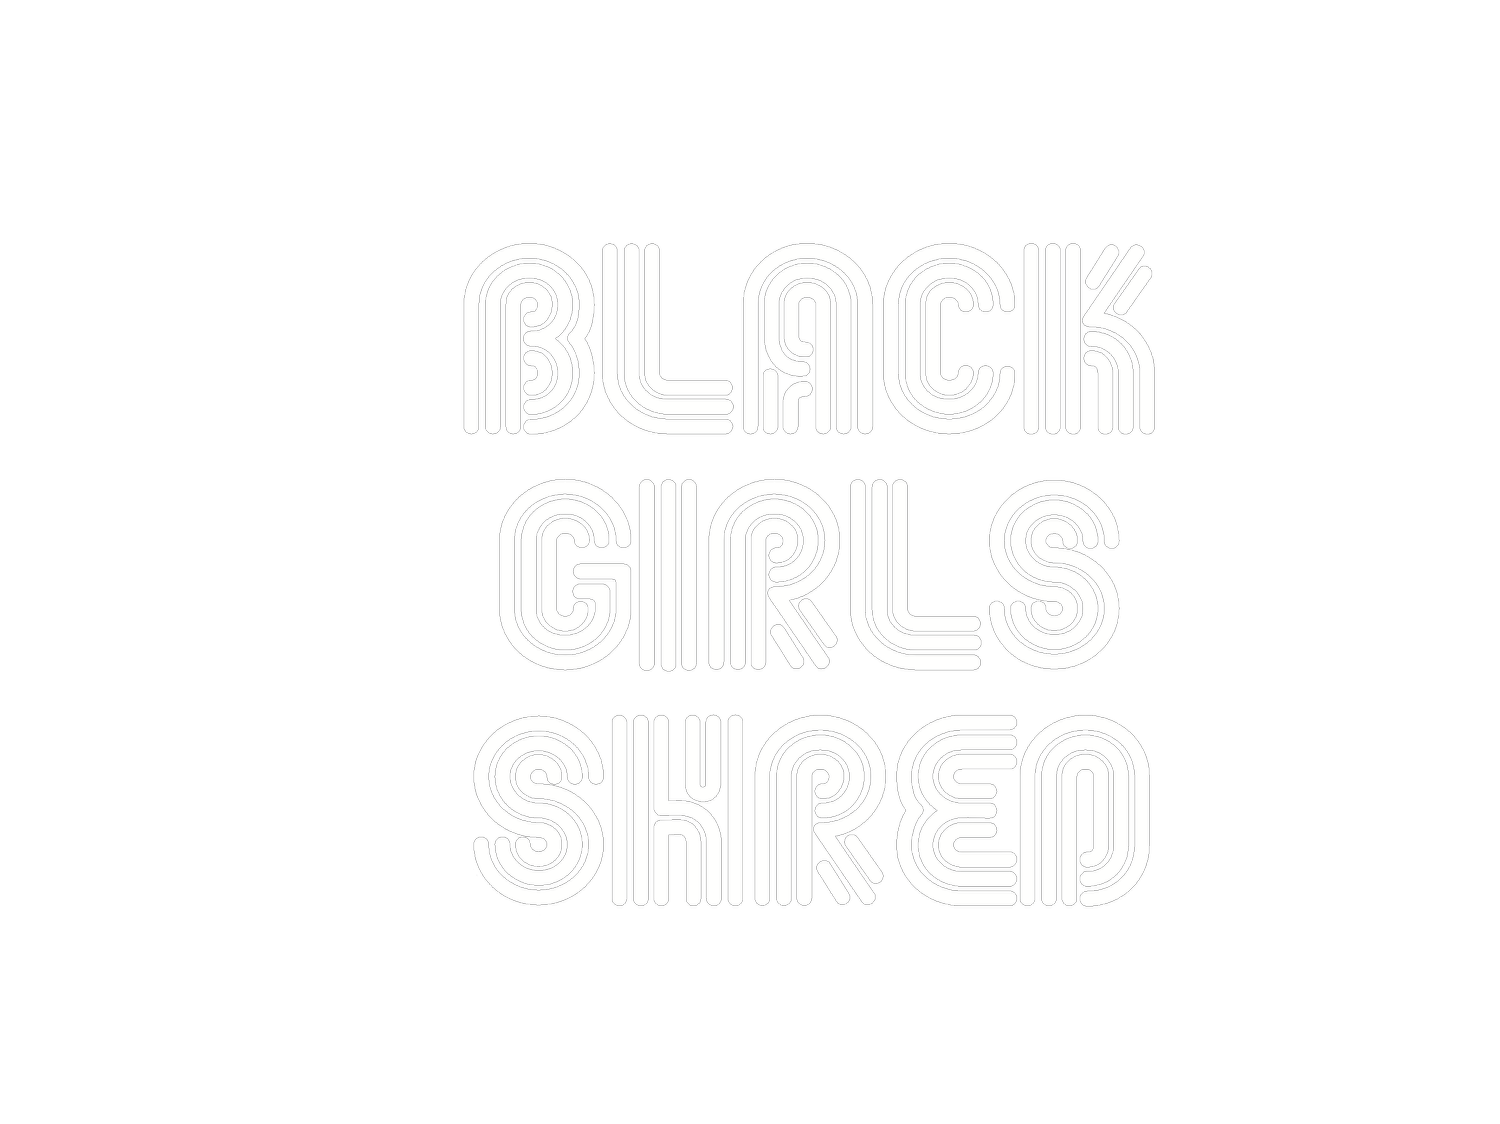 Black Girls Shred